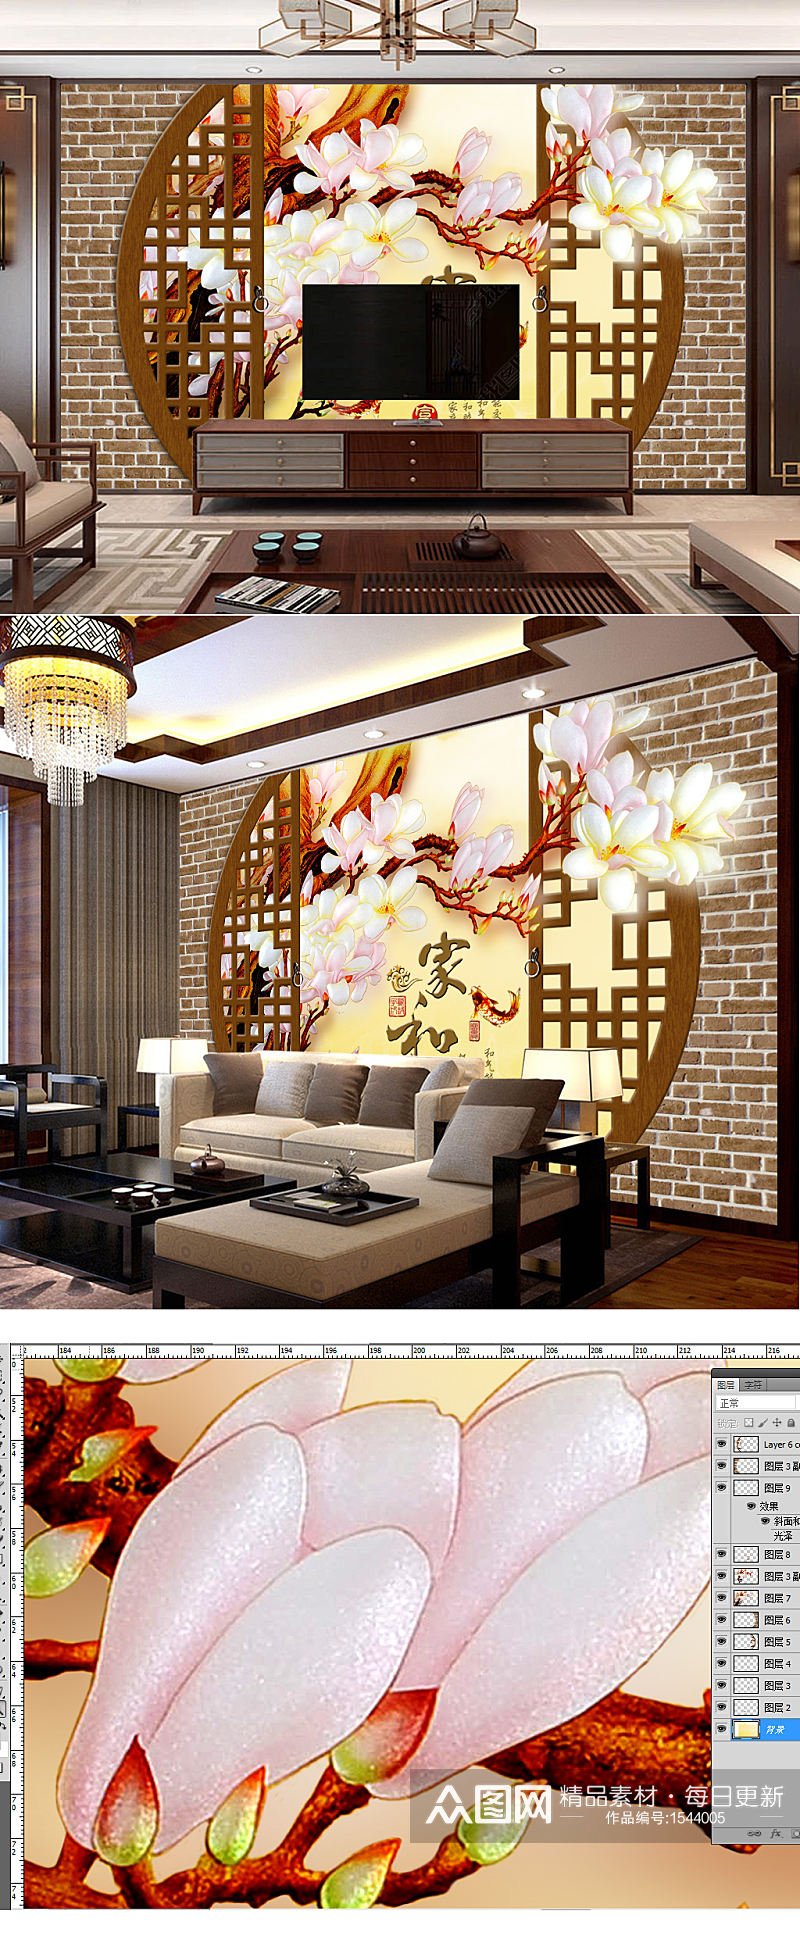 中式红砖墙彩雕玉兰花电视背景墙素材